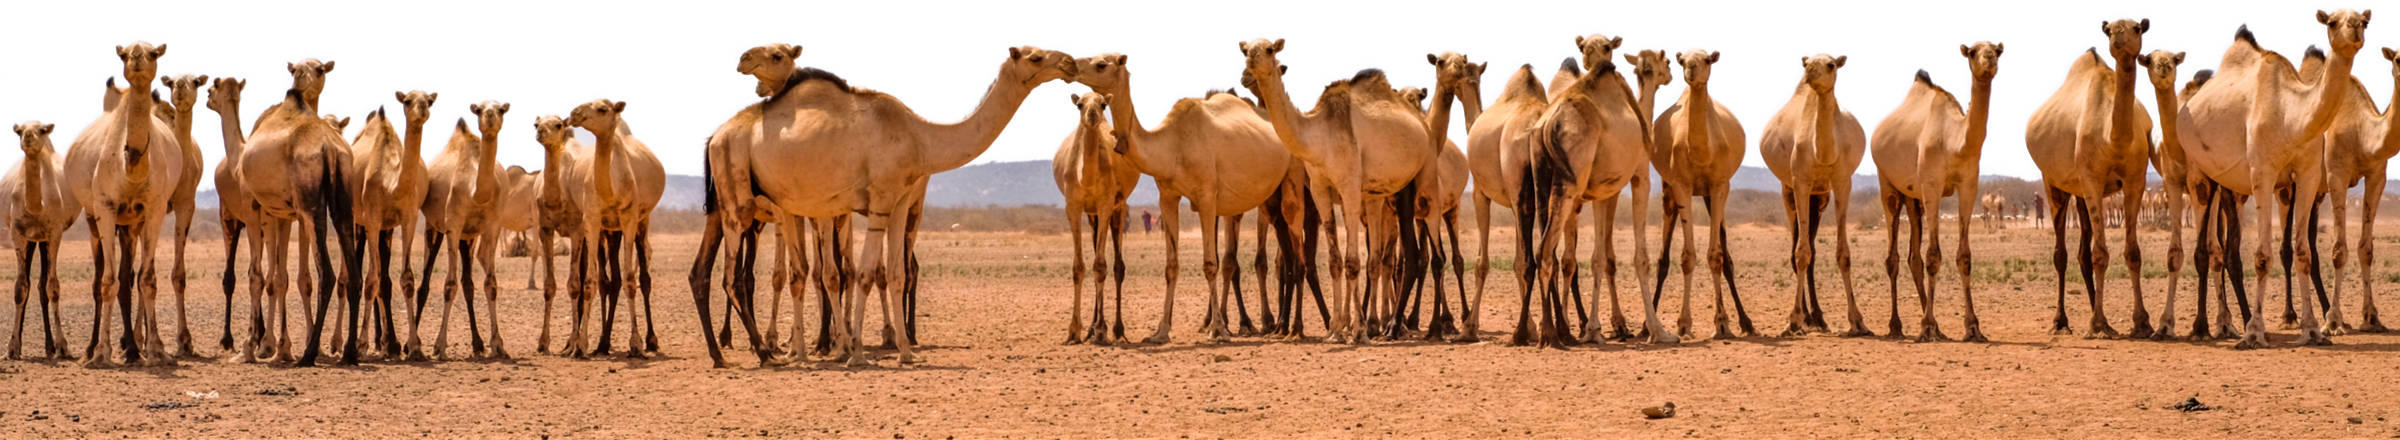 Kamele in ausgetrockneter Landschaft